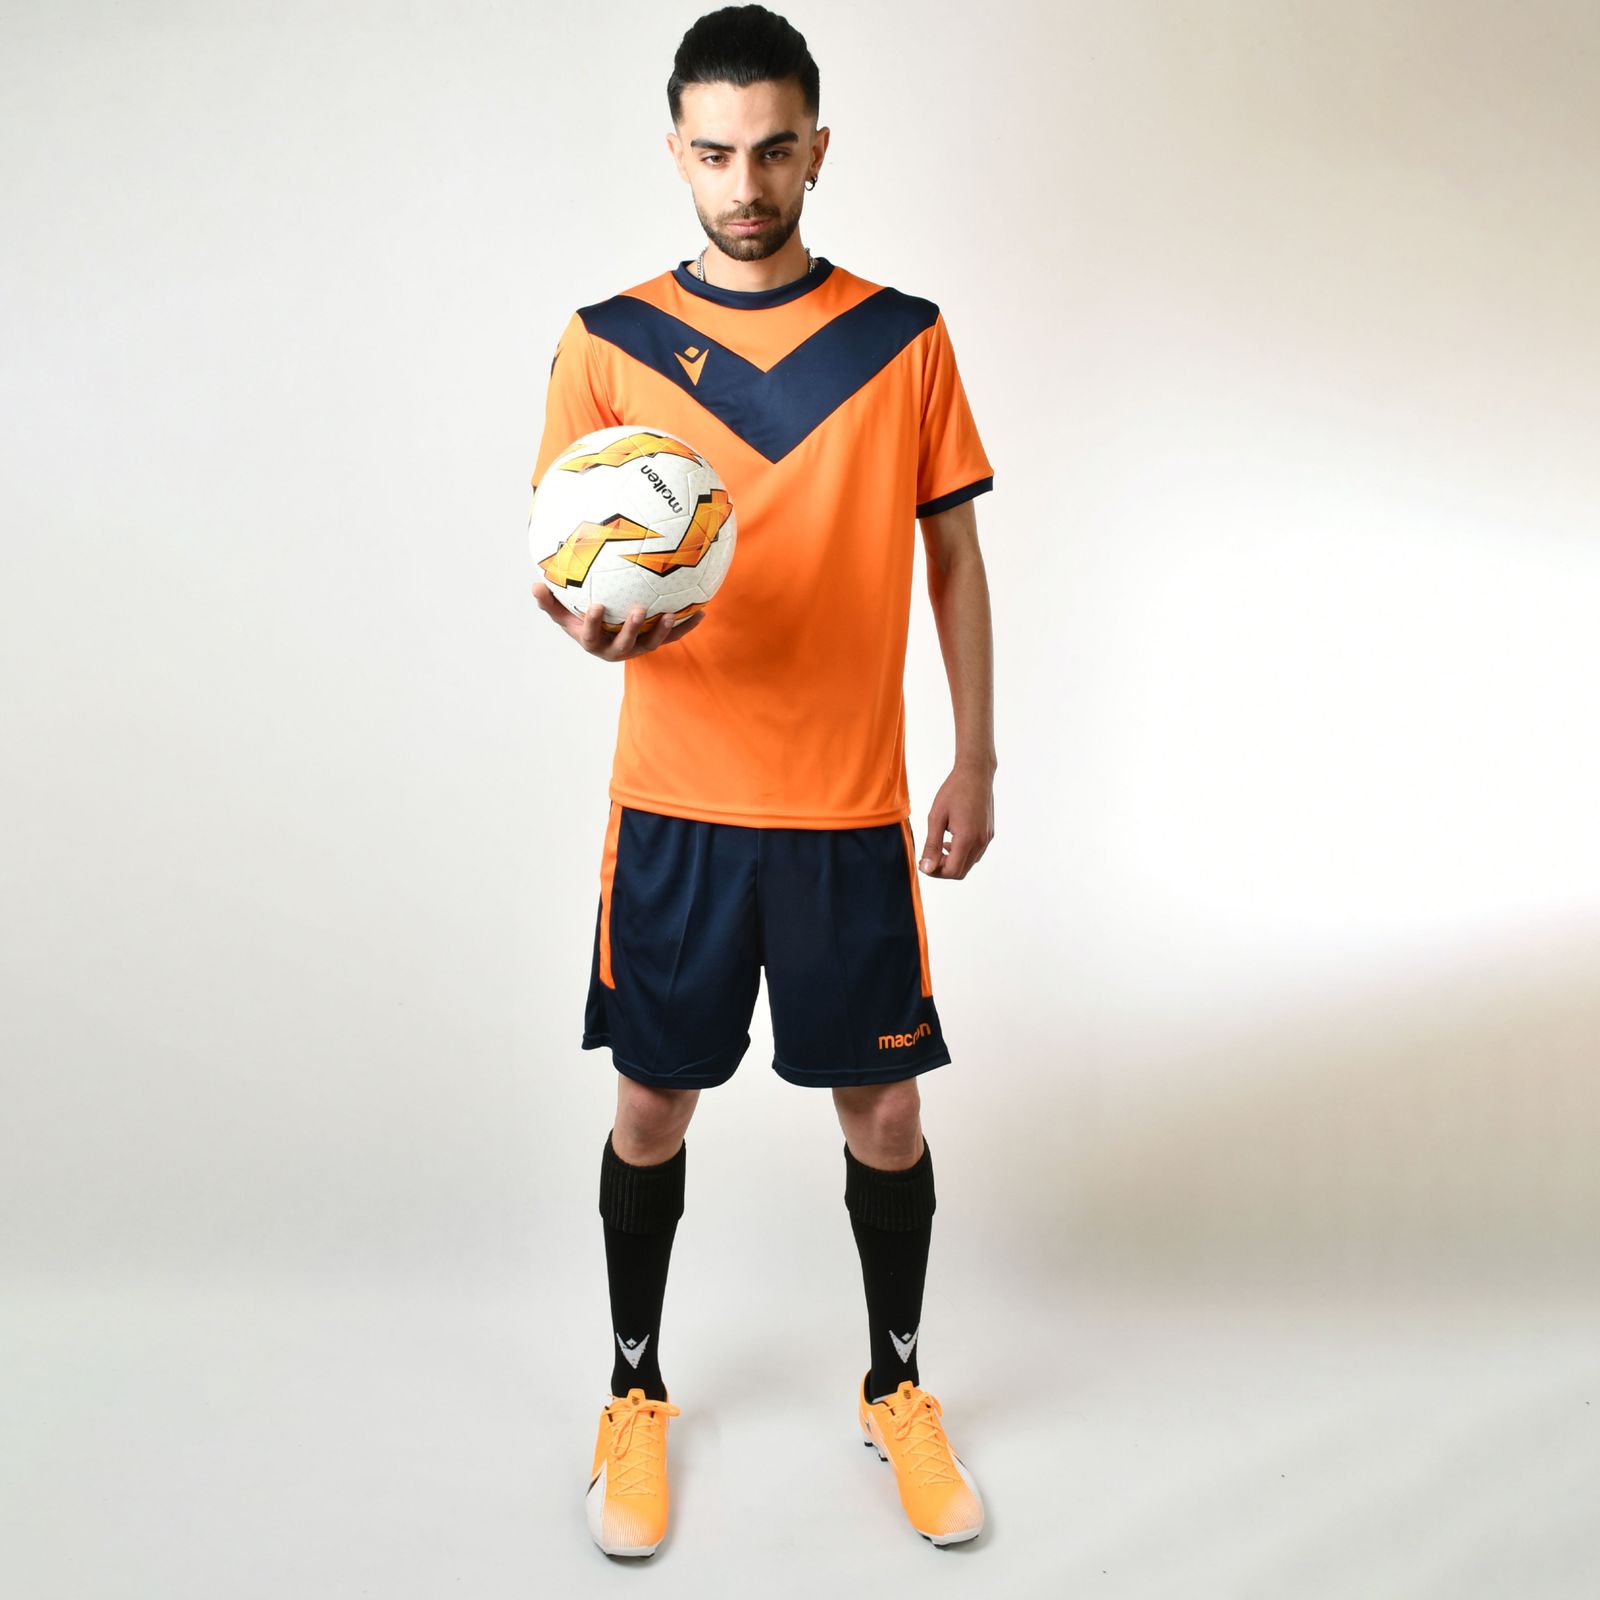 ست پیراهن و شورت ورزشی مردانه مکرون مدل پالرمو رنگ نارنجی  -  - 2